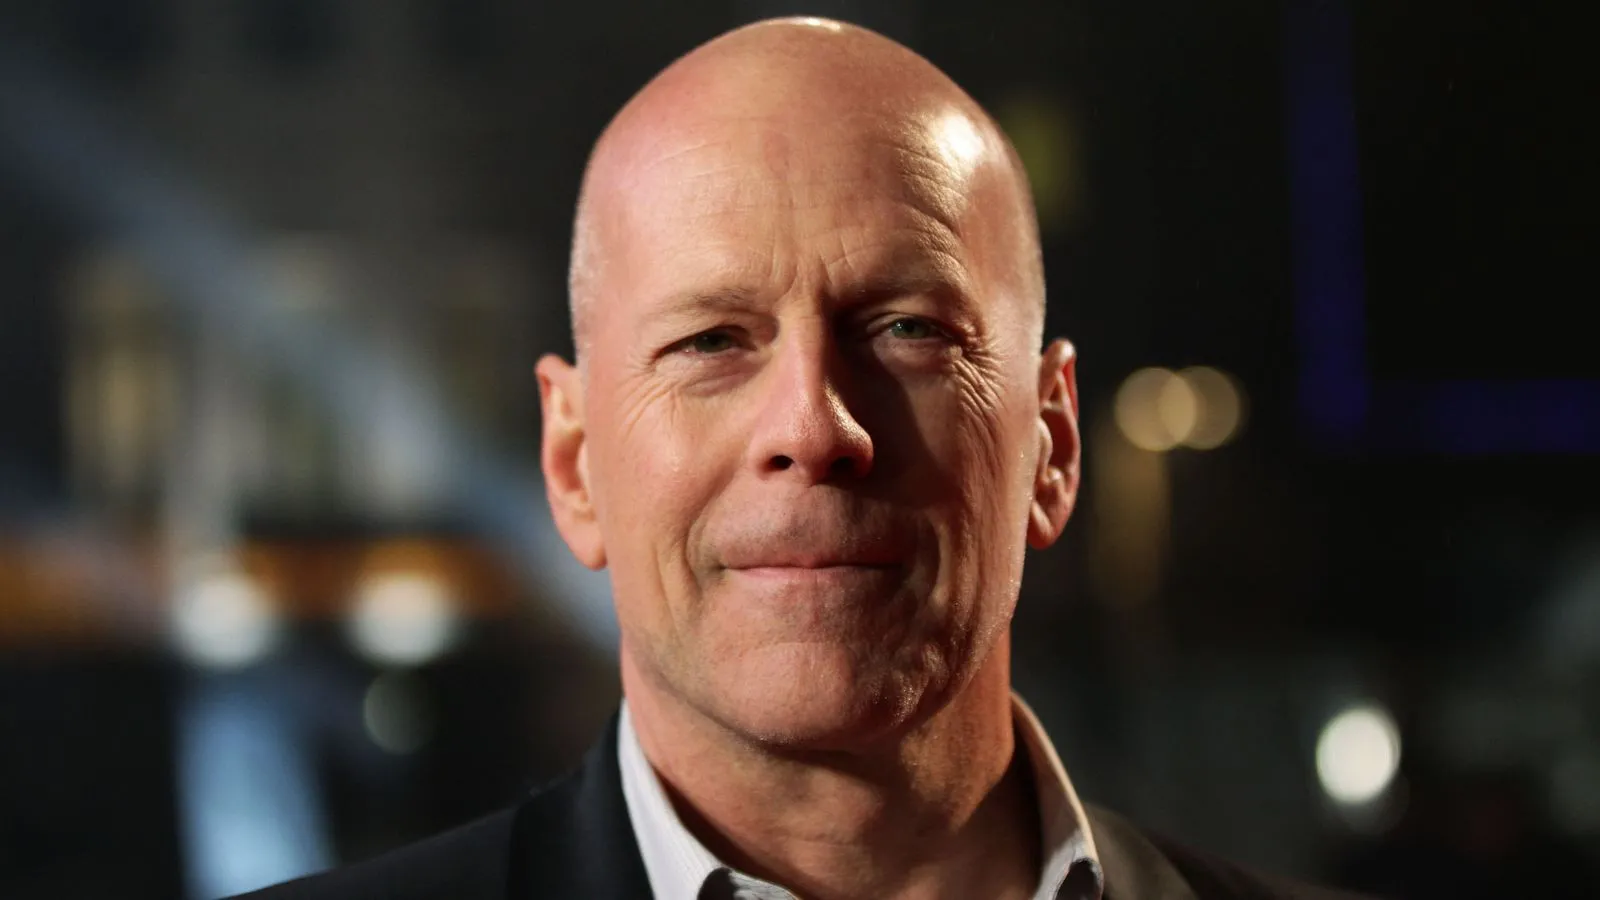 Bruce Willis se retira de la actuación por problemas de salud